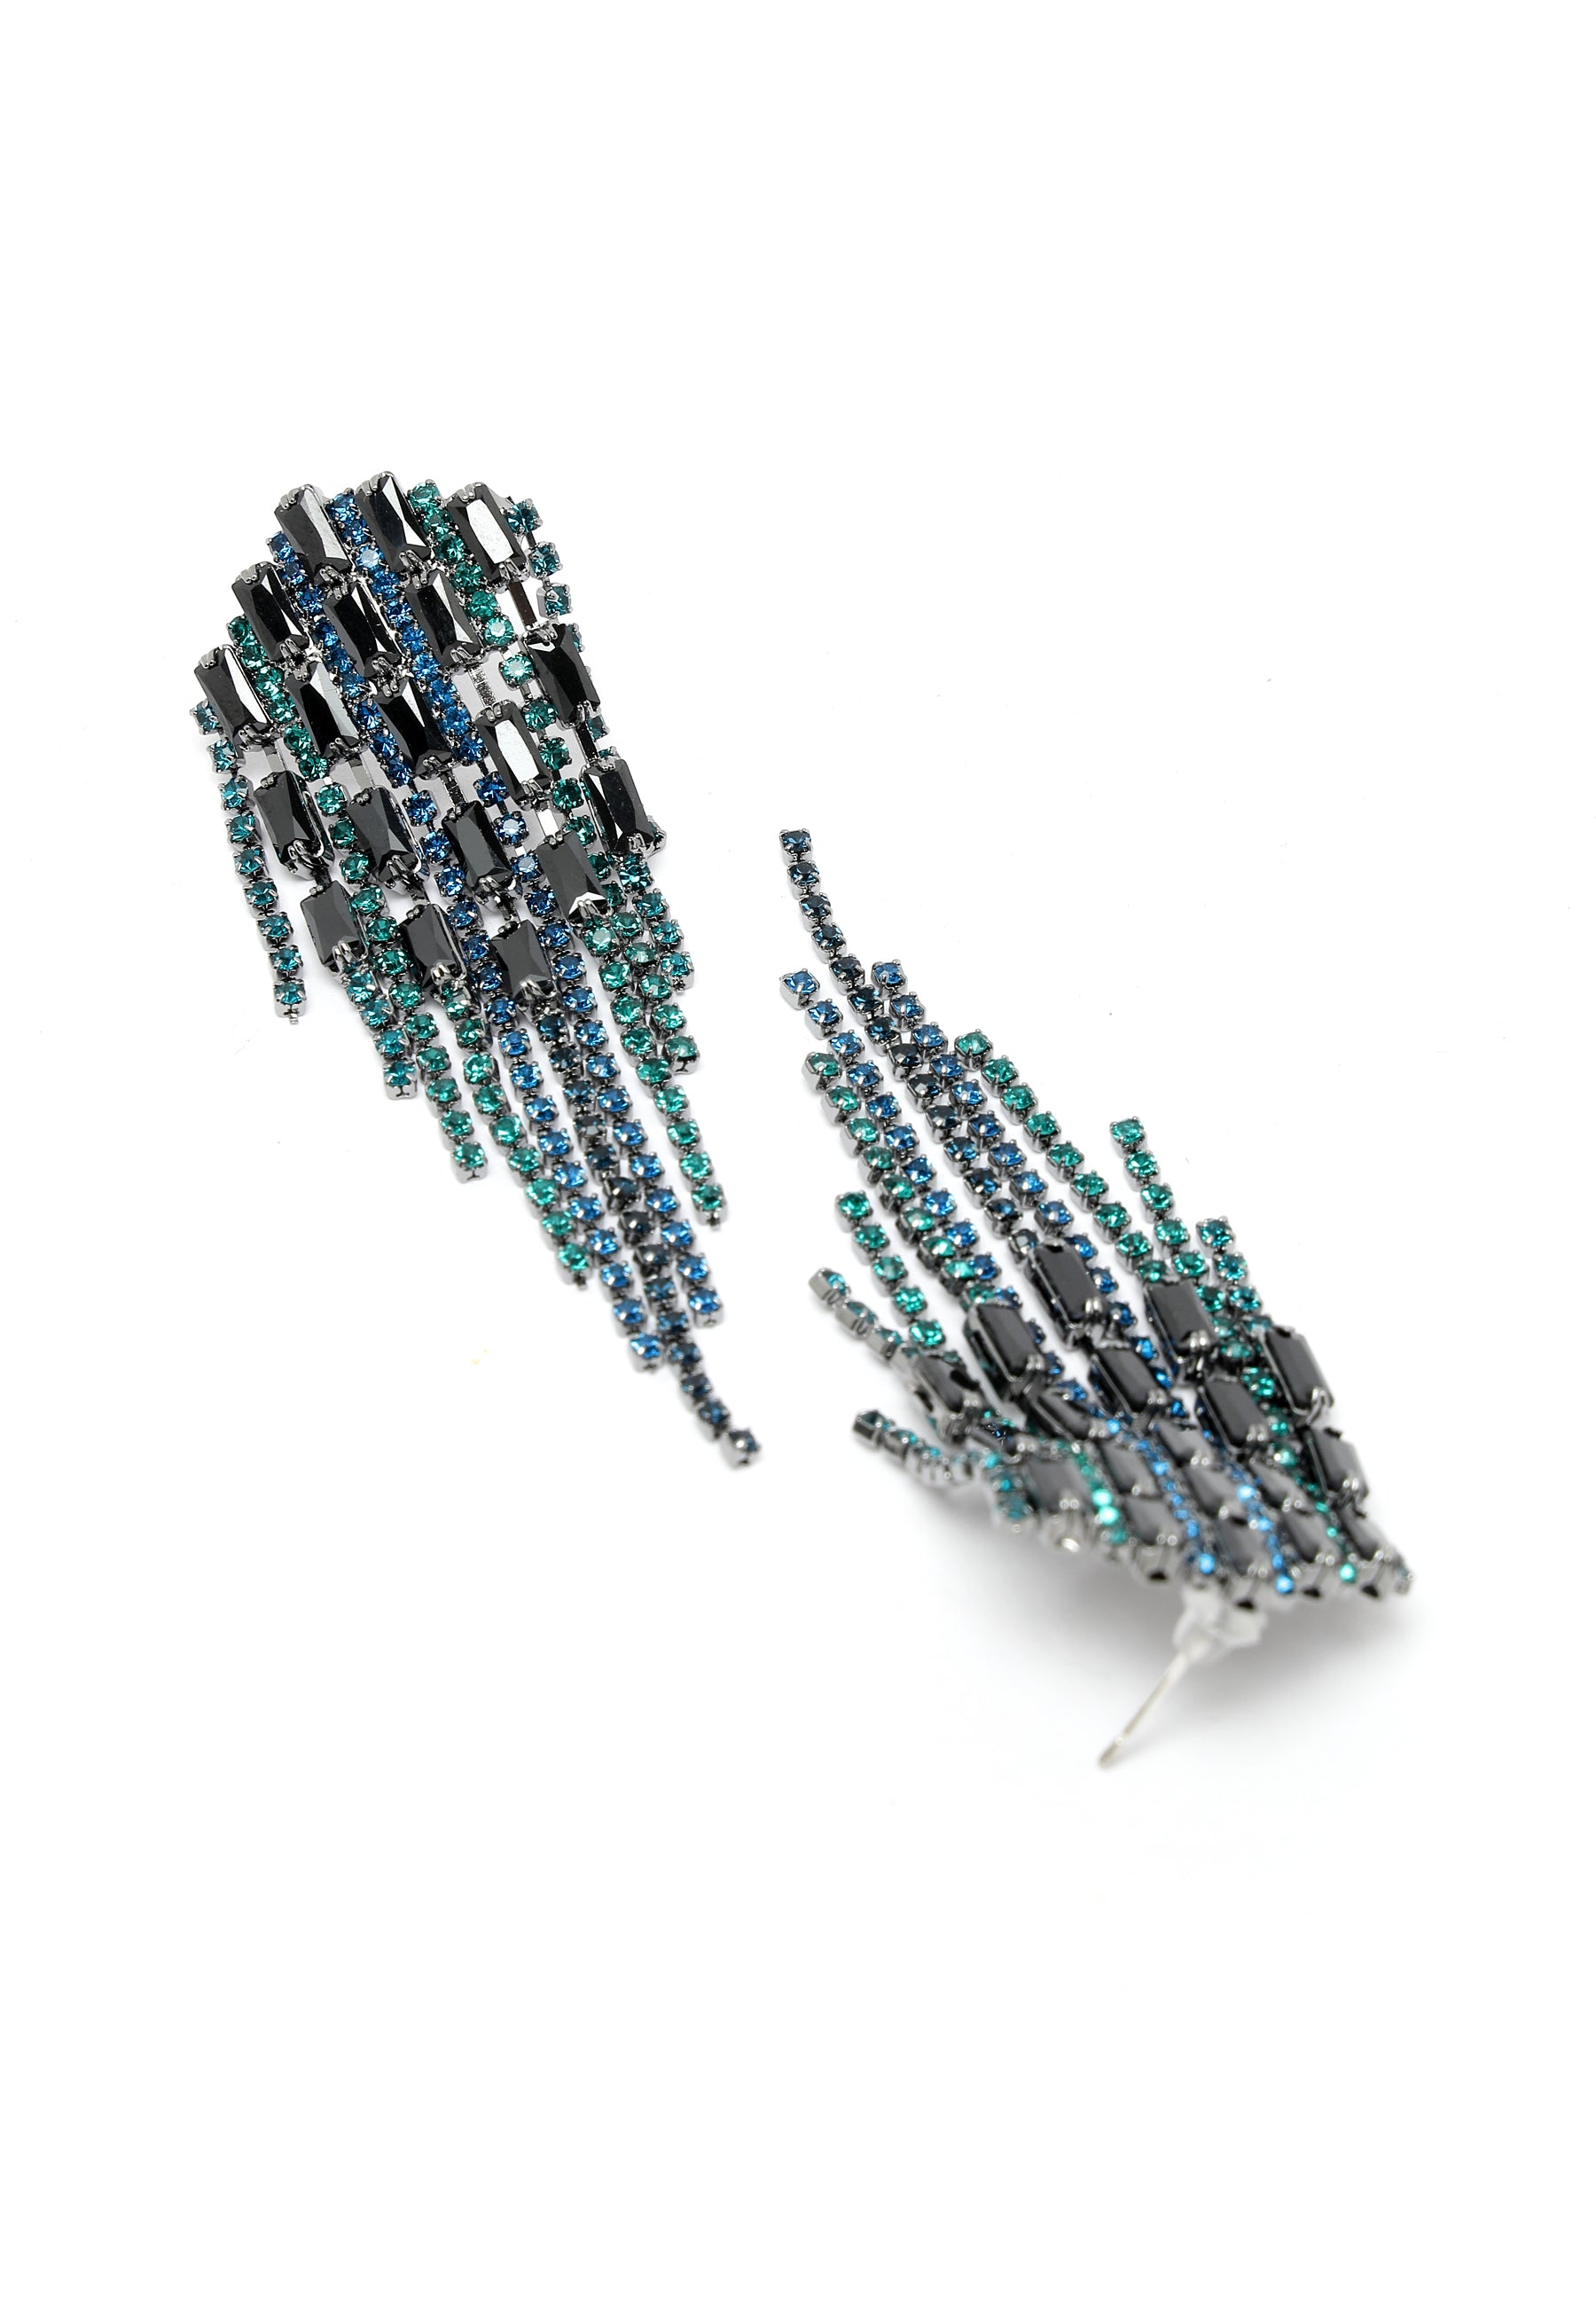 Orecchini pendenti con borchie di cristalli in blu